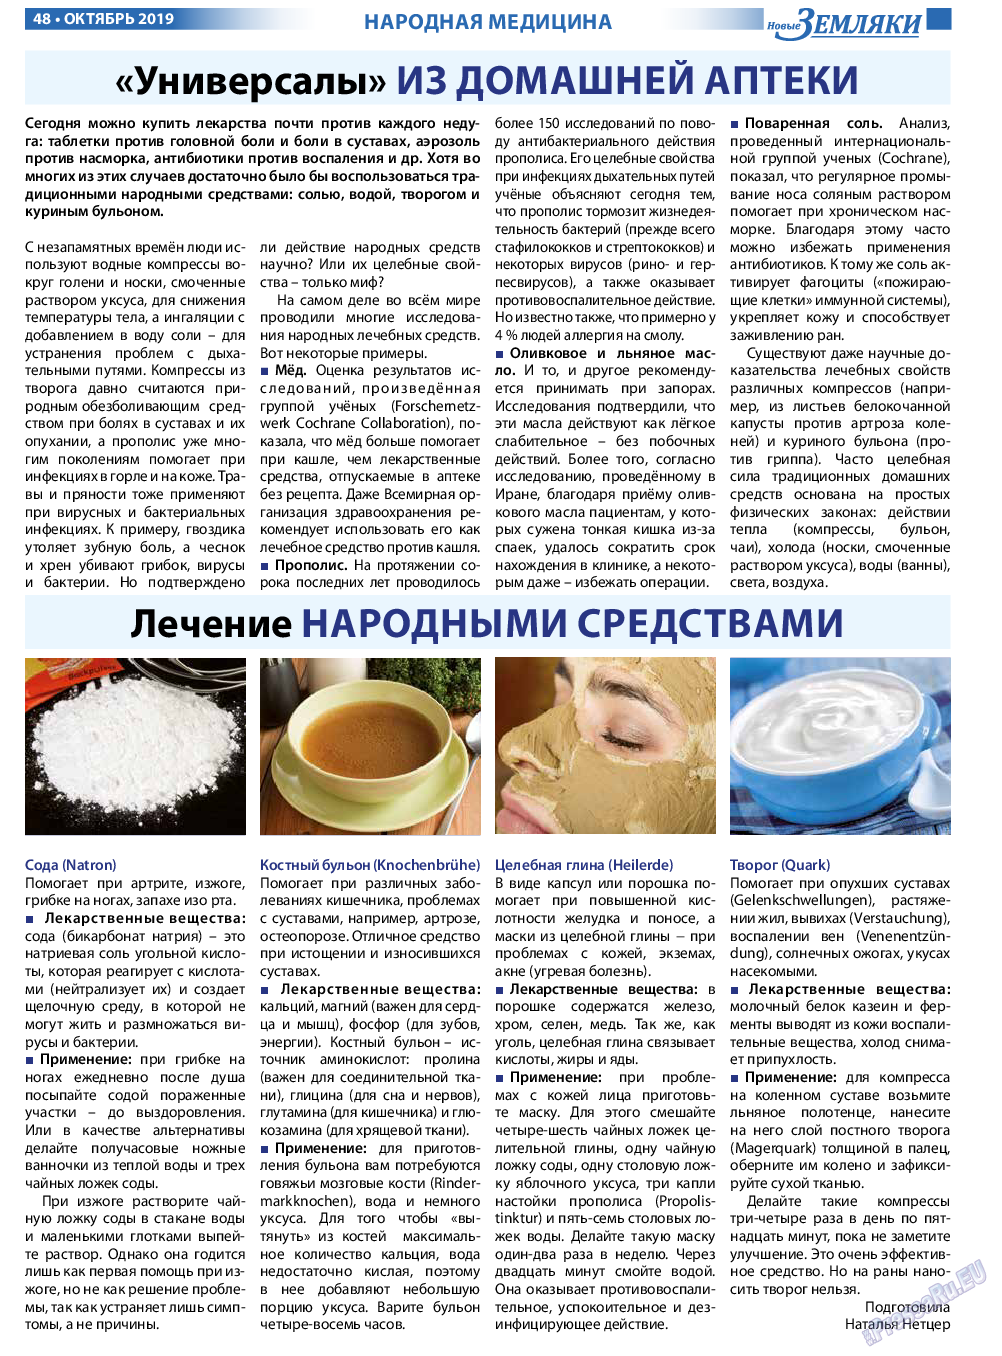 Новые Земляки, газета. 2019 №10 стр.48